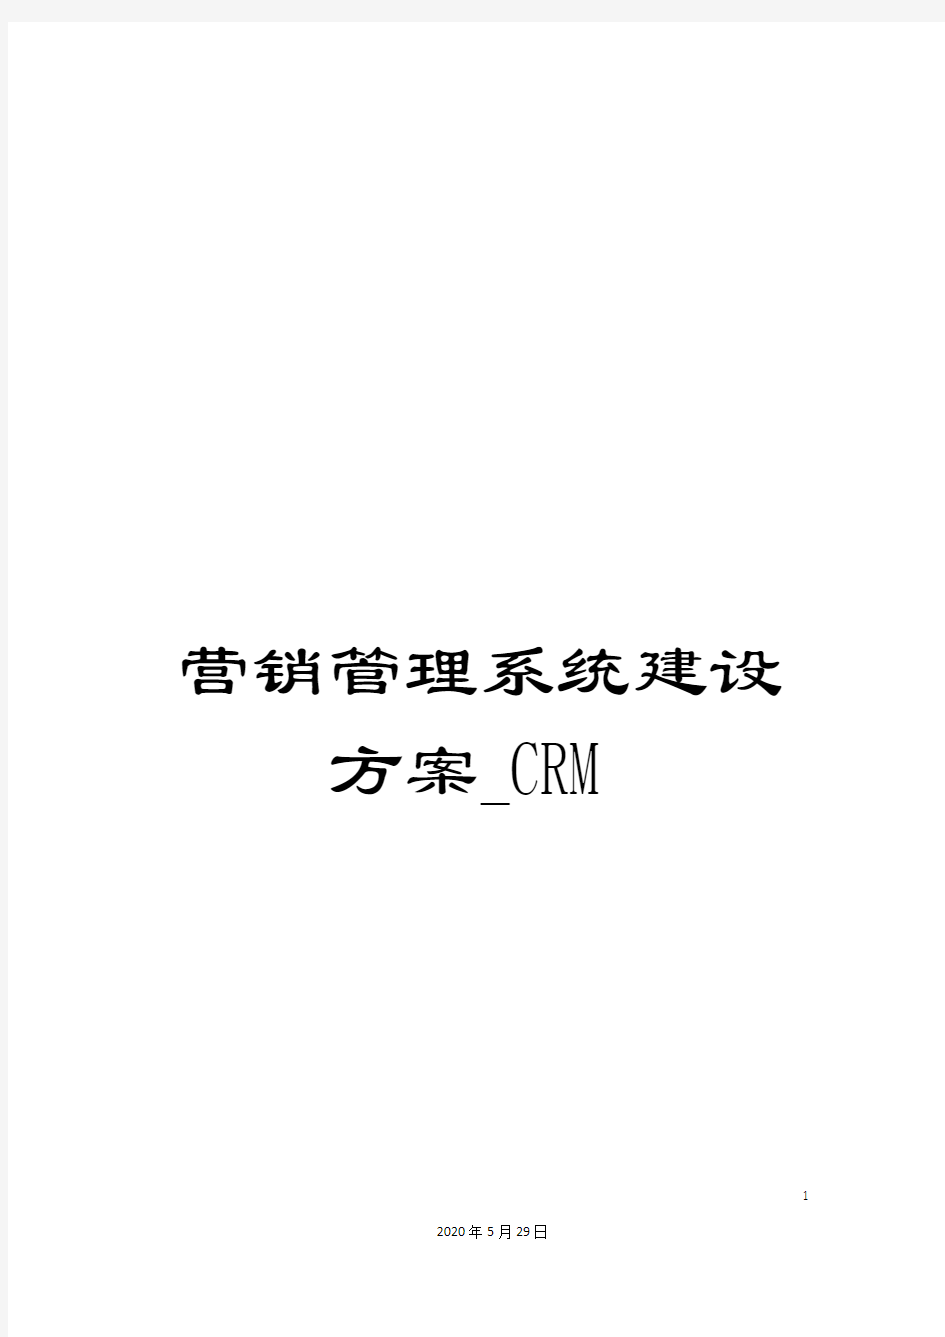 营销管理系统建设方案_CRM